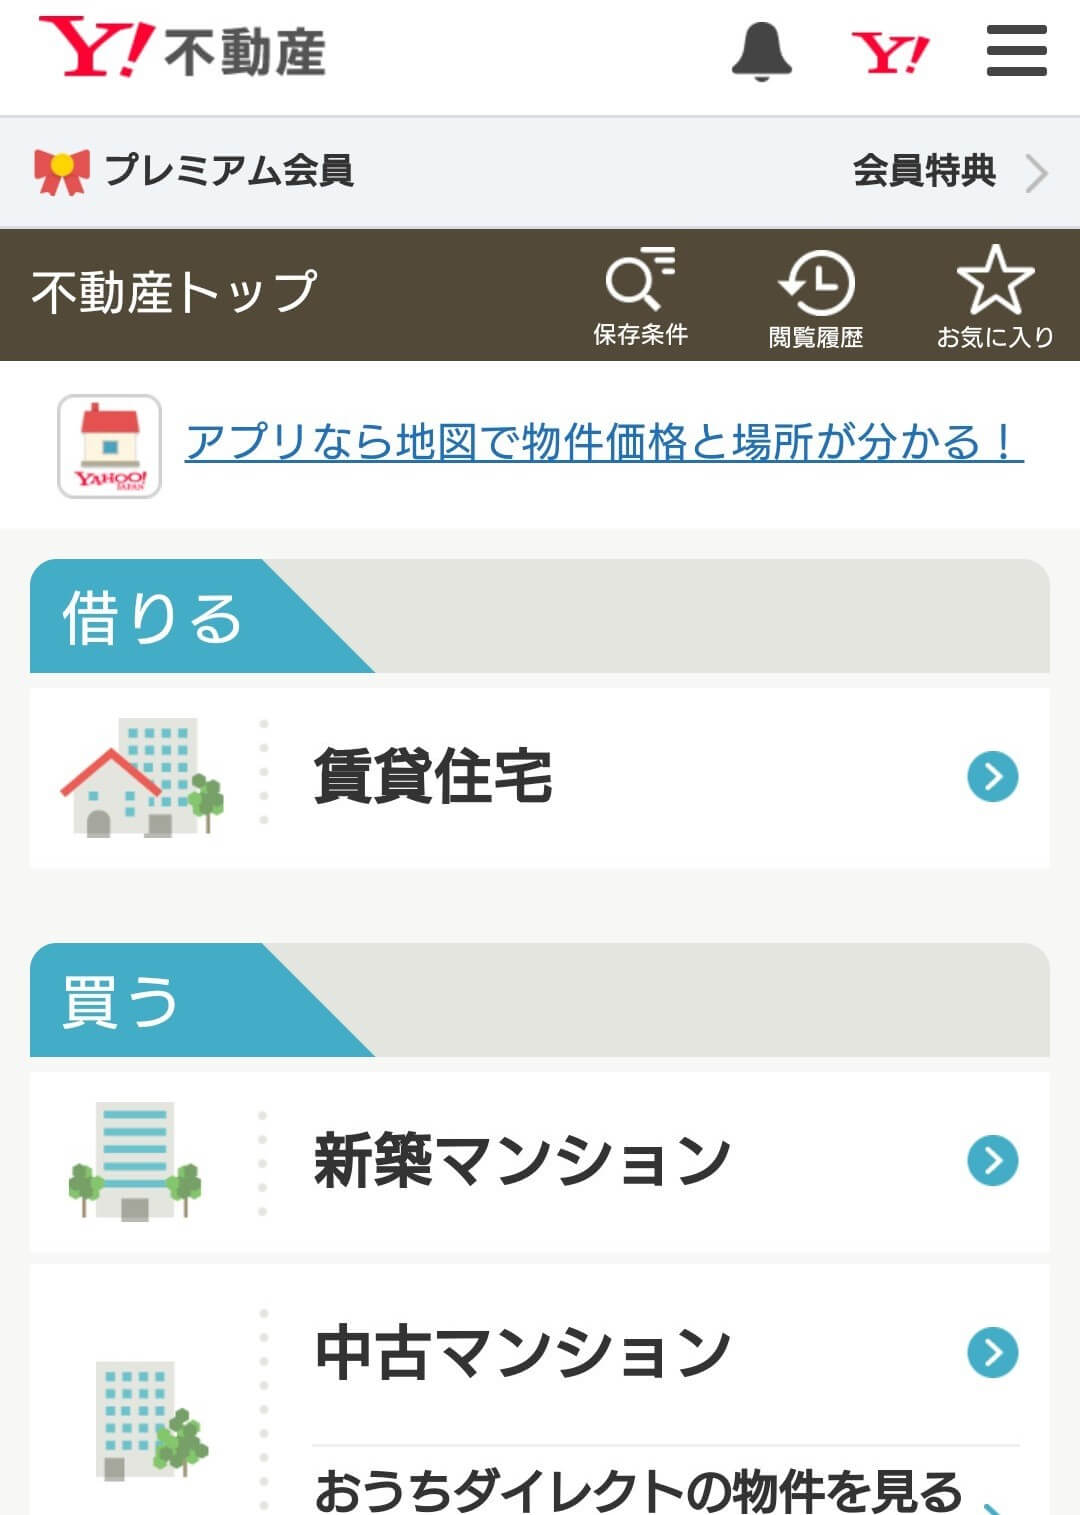 Yahoo!不動産の都道府県選択画面